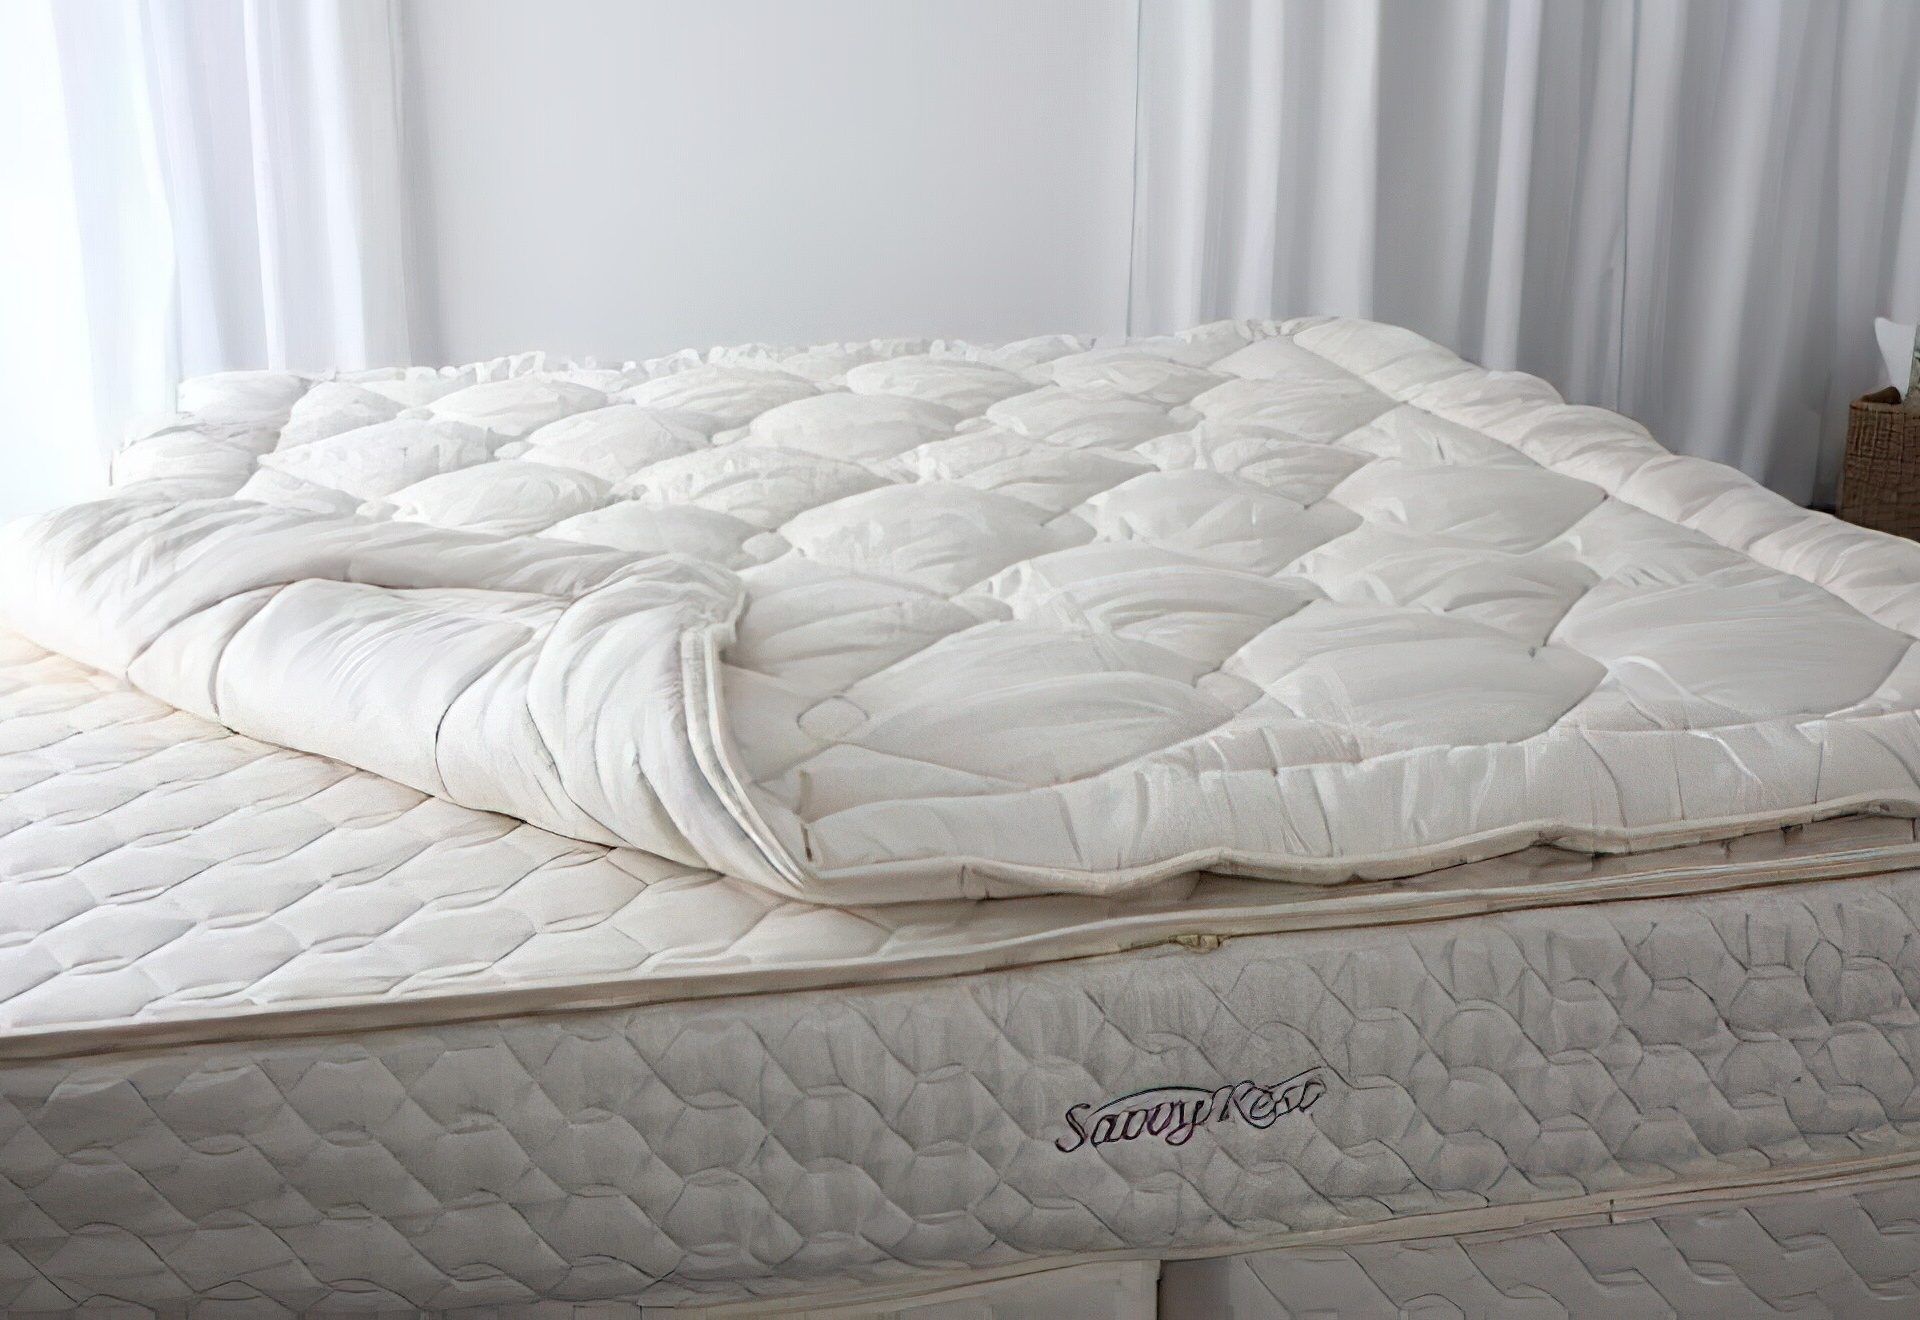 savvy rest mattress topper reviews